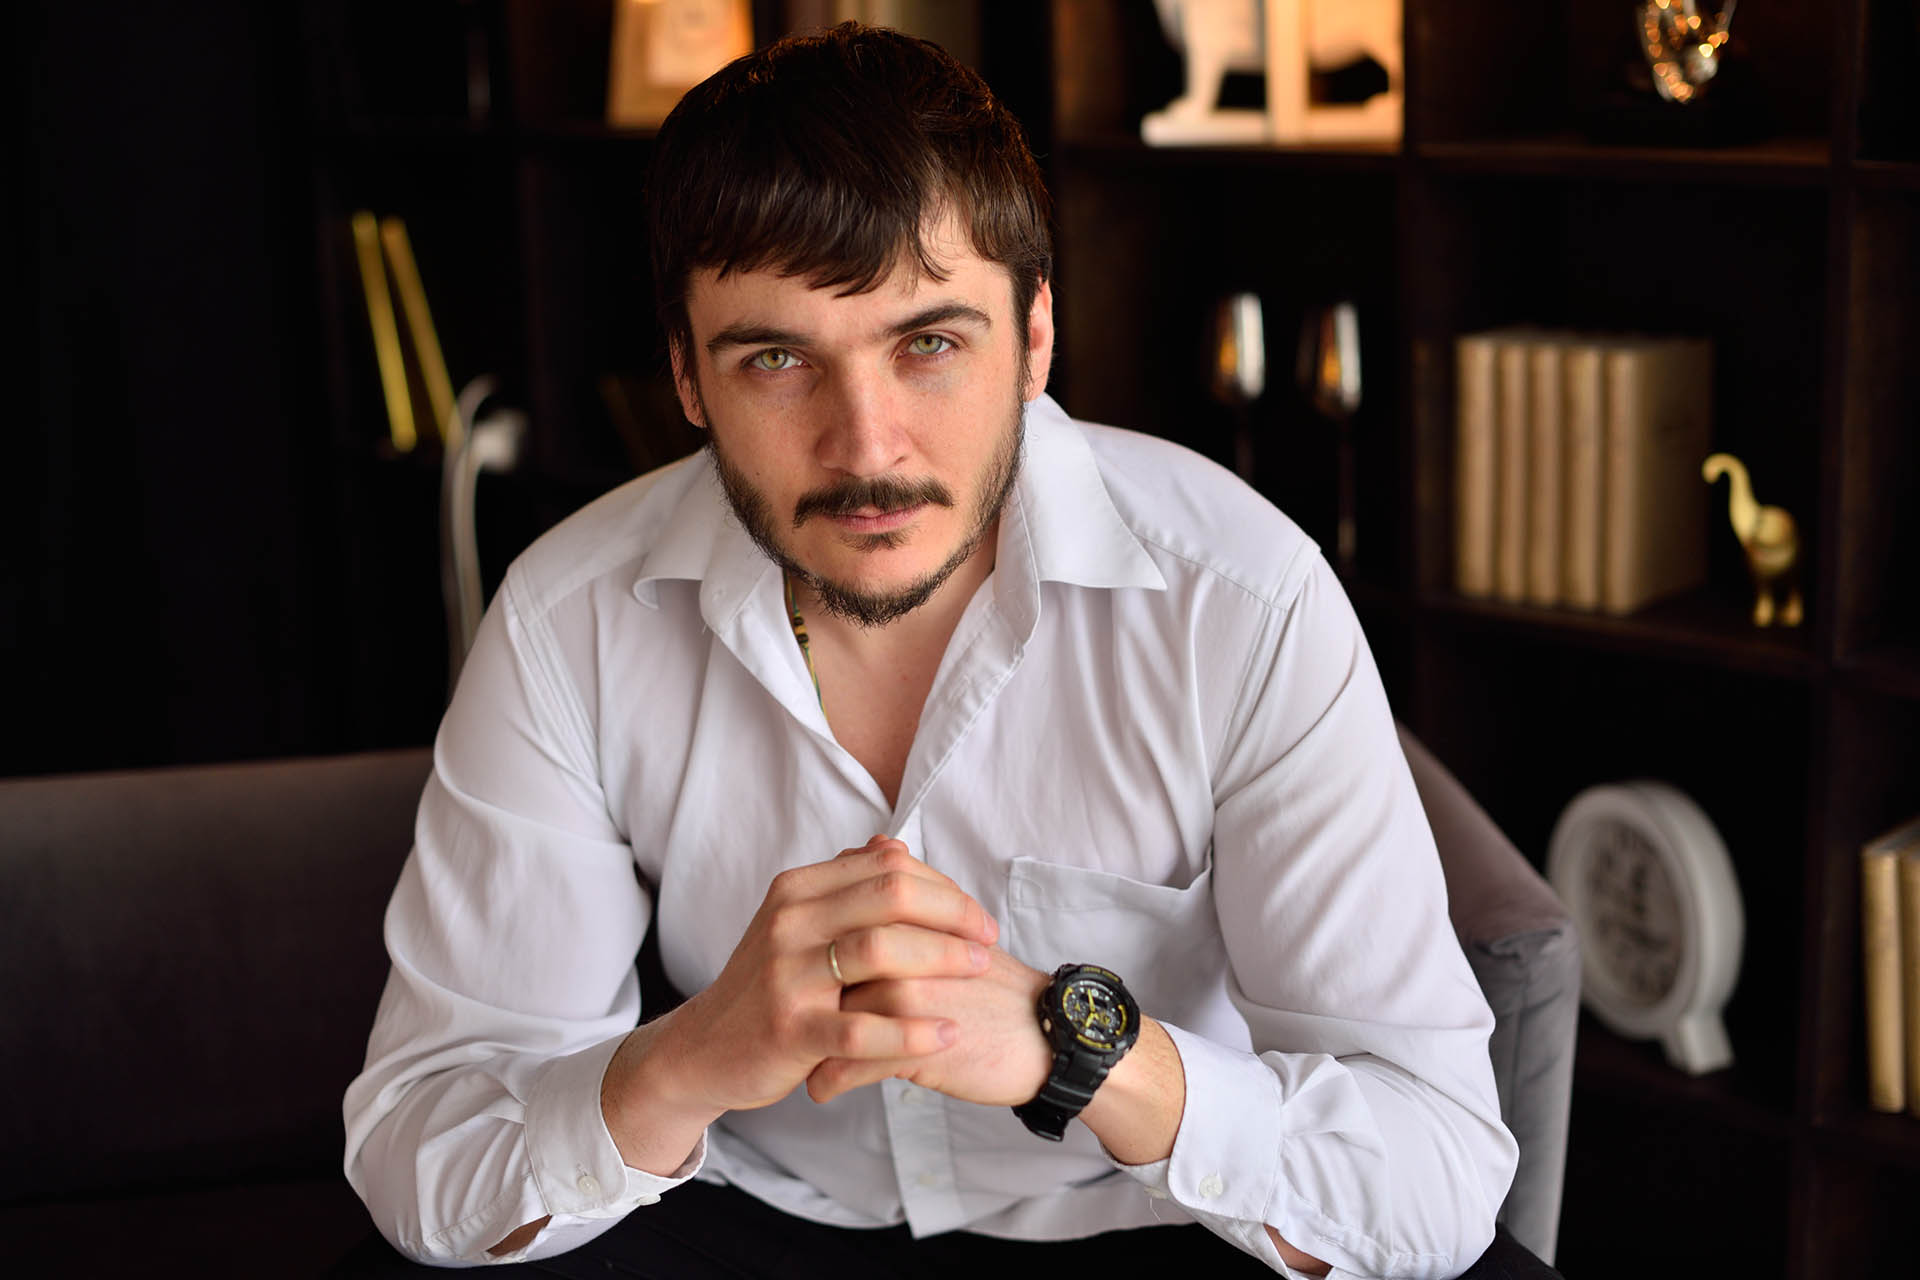 Спикер: Муравьев Дмитрий, консультант по масштабированию бизнеса в сфере производства и услуг